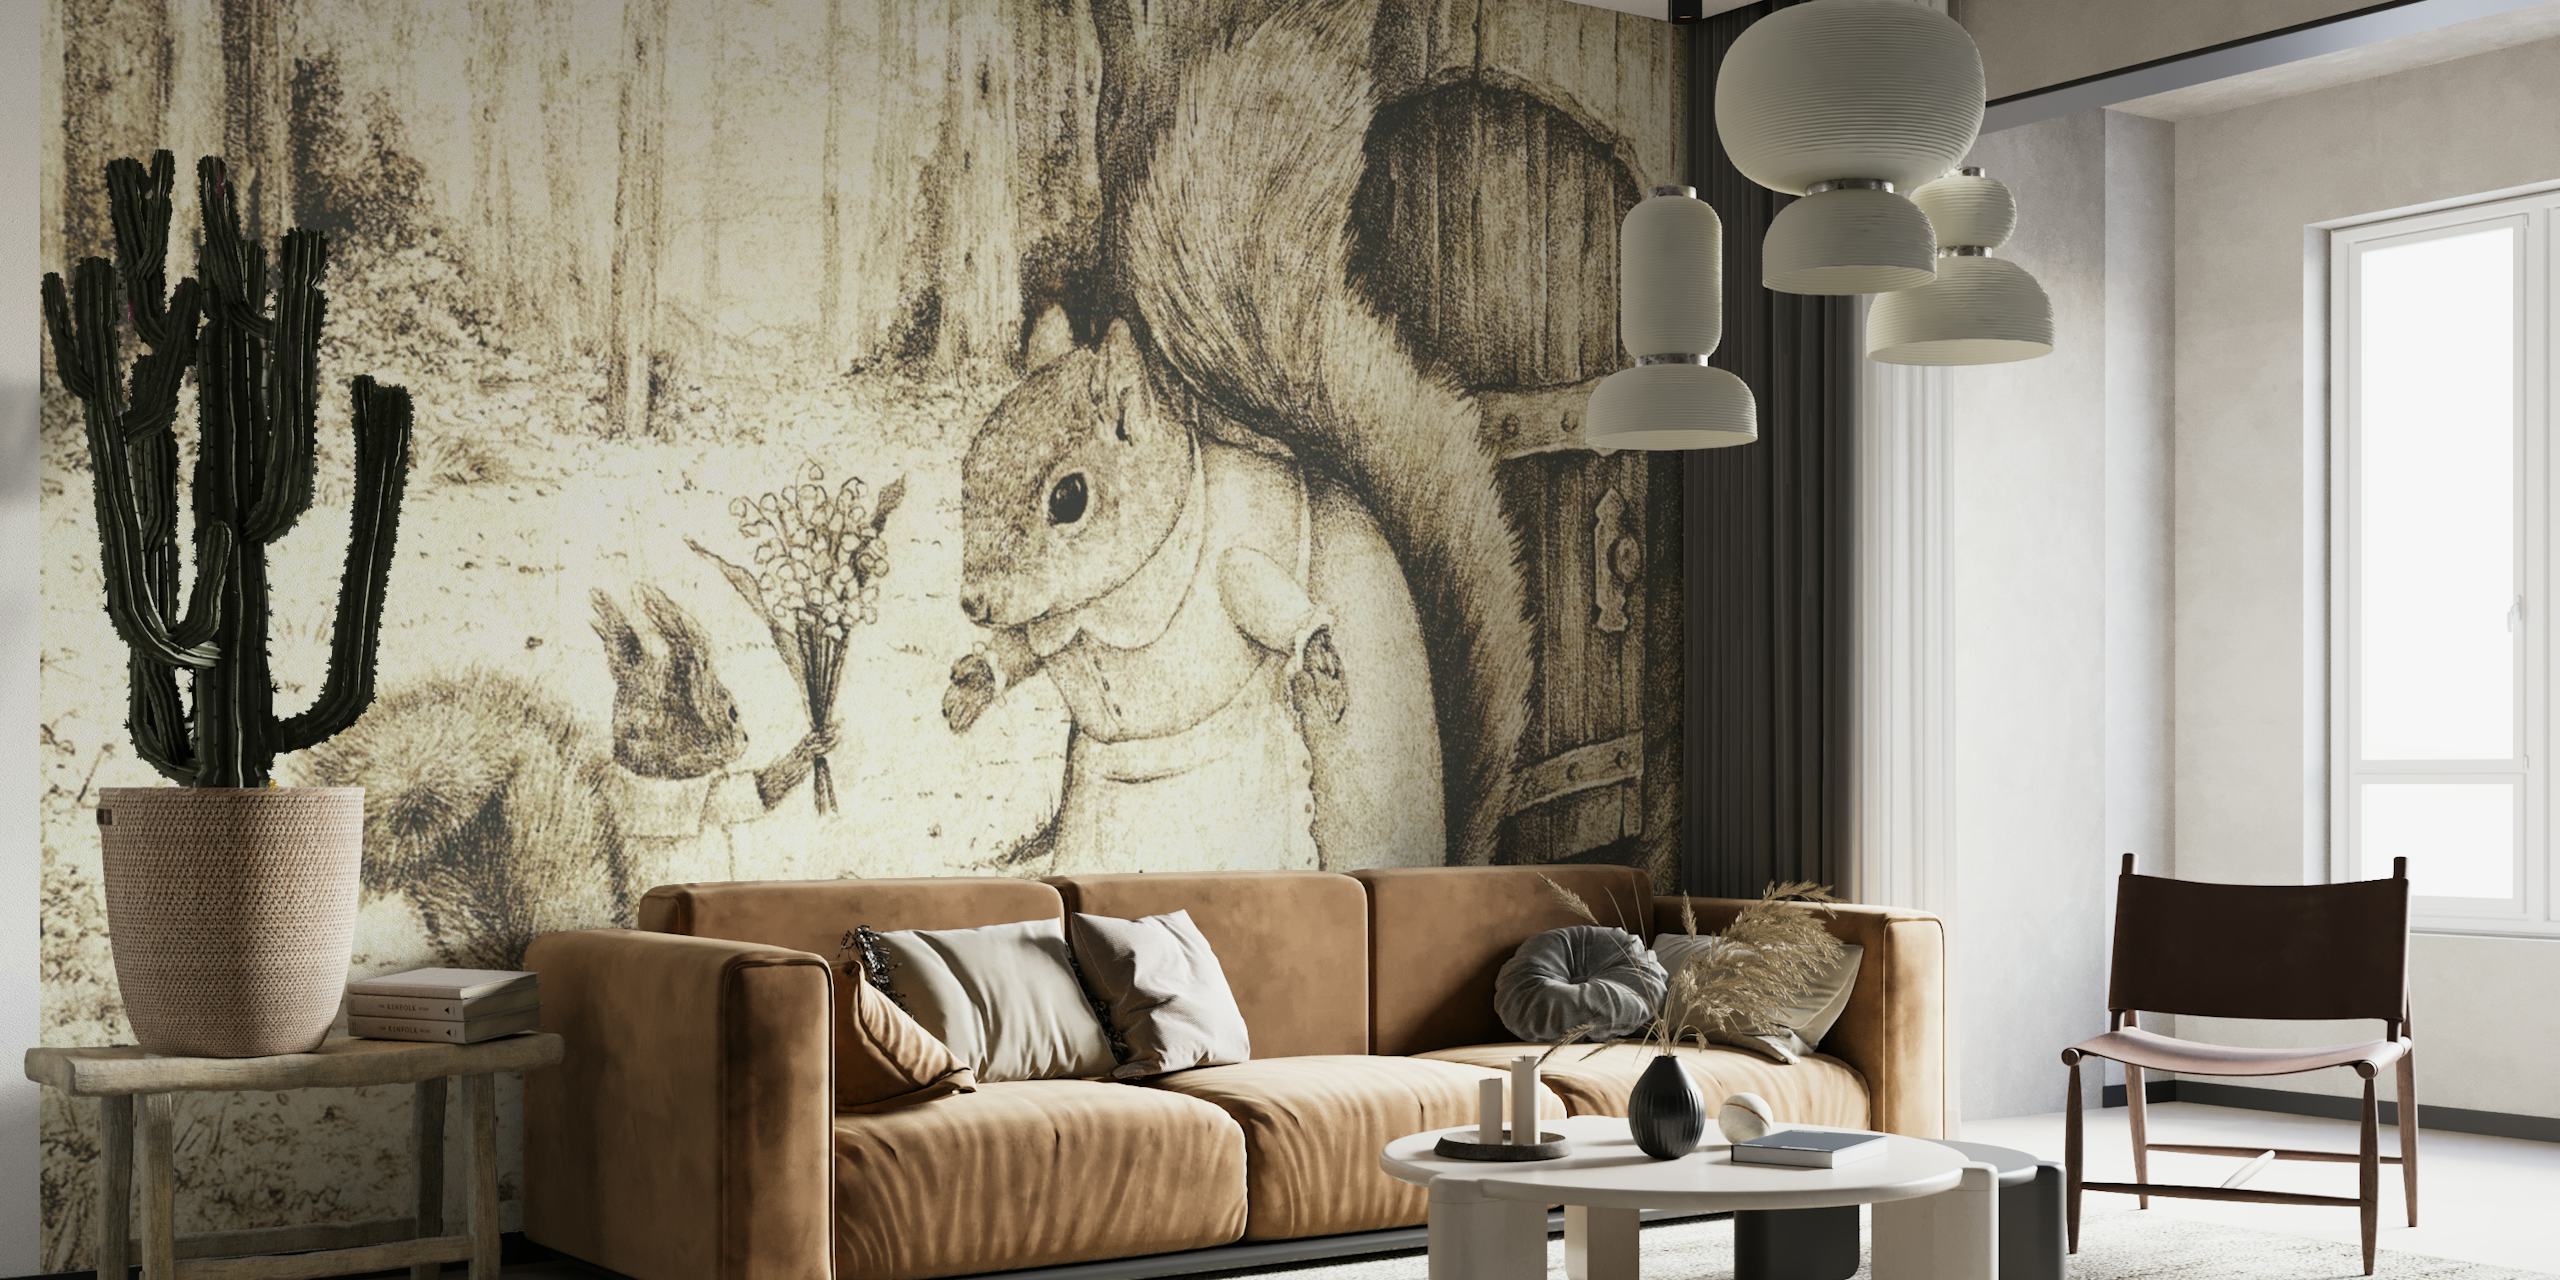 Muurschildering in schetsstijl van een moeder-eekhoorn met haar jongen op Happywall.com